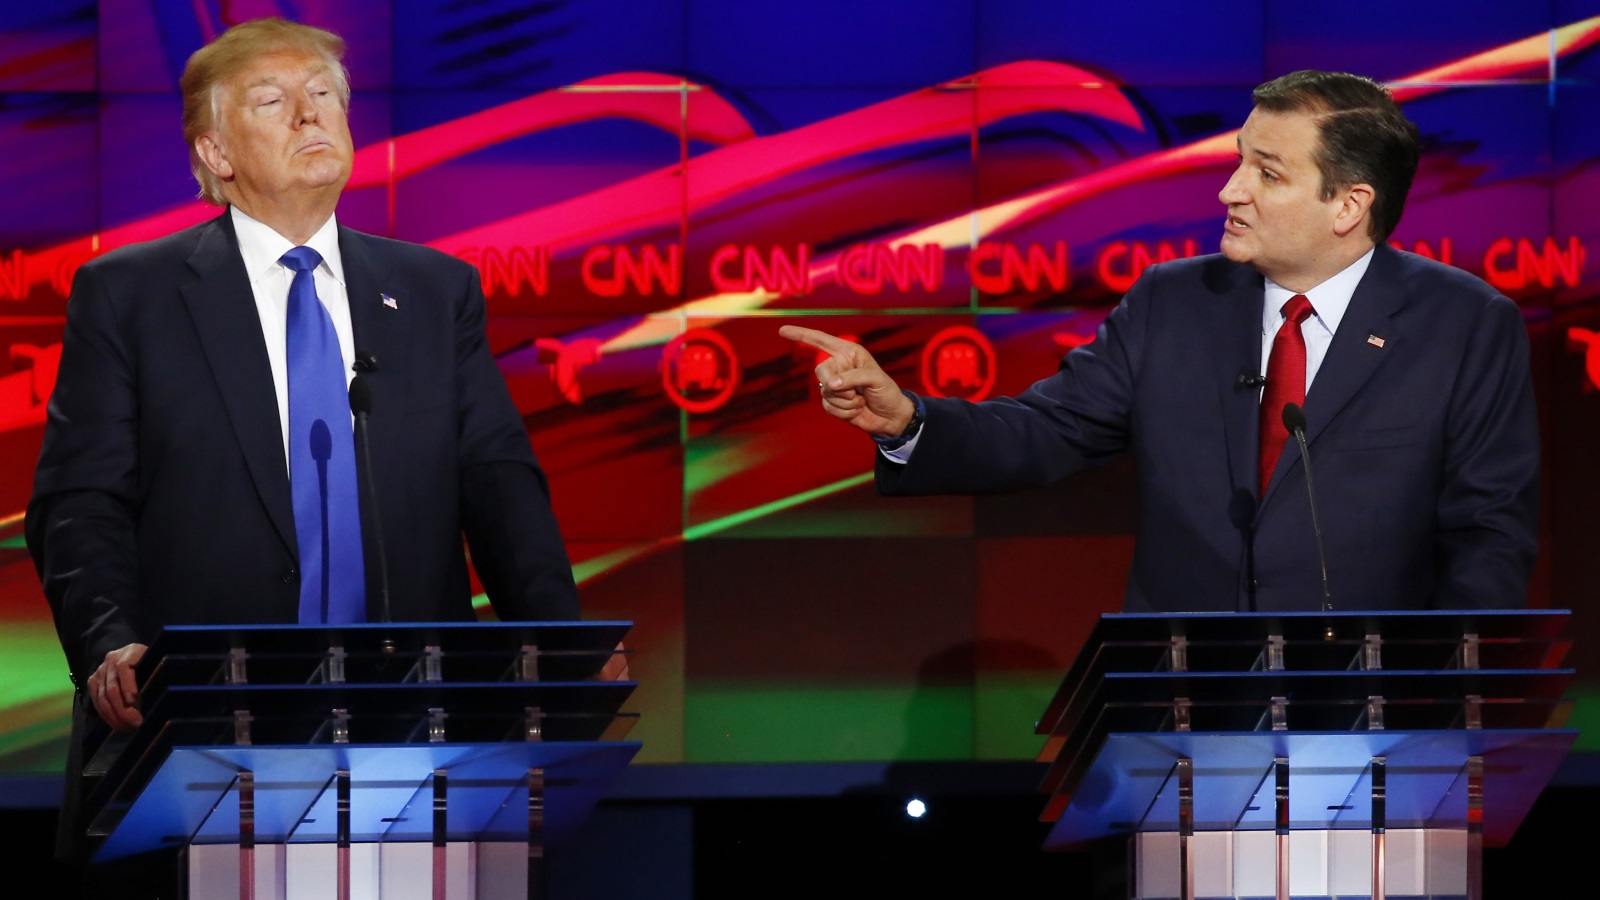 المرشح الجمهوري تيد كروز أثناء مناظرة حزبية مع الرئيس الأميركي الحالي دونالد ترمب (رويترز)